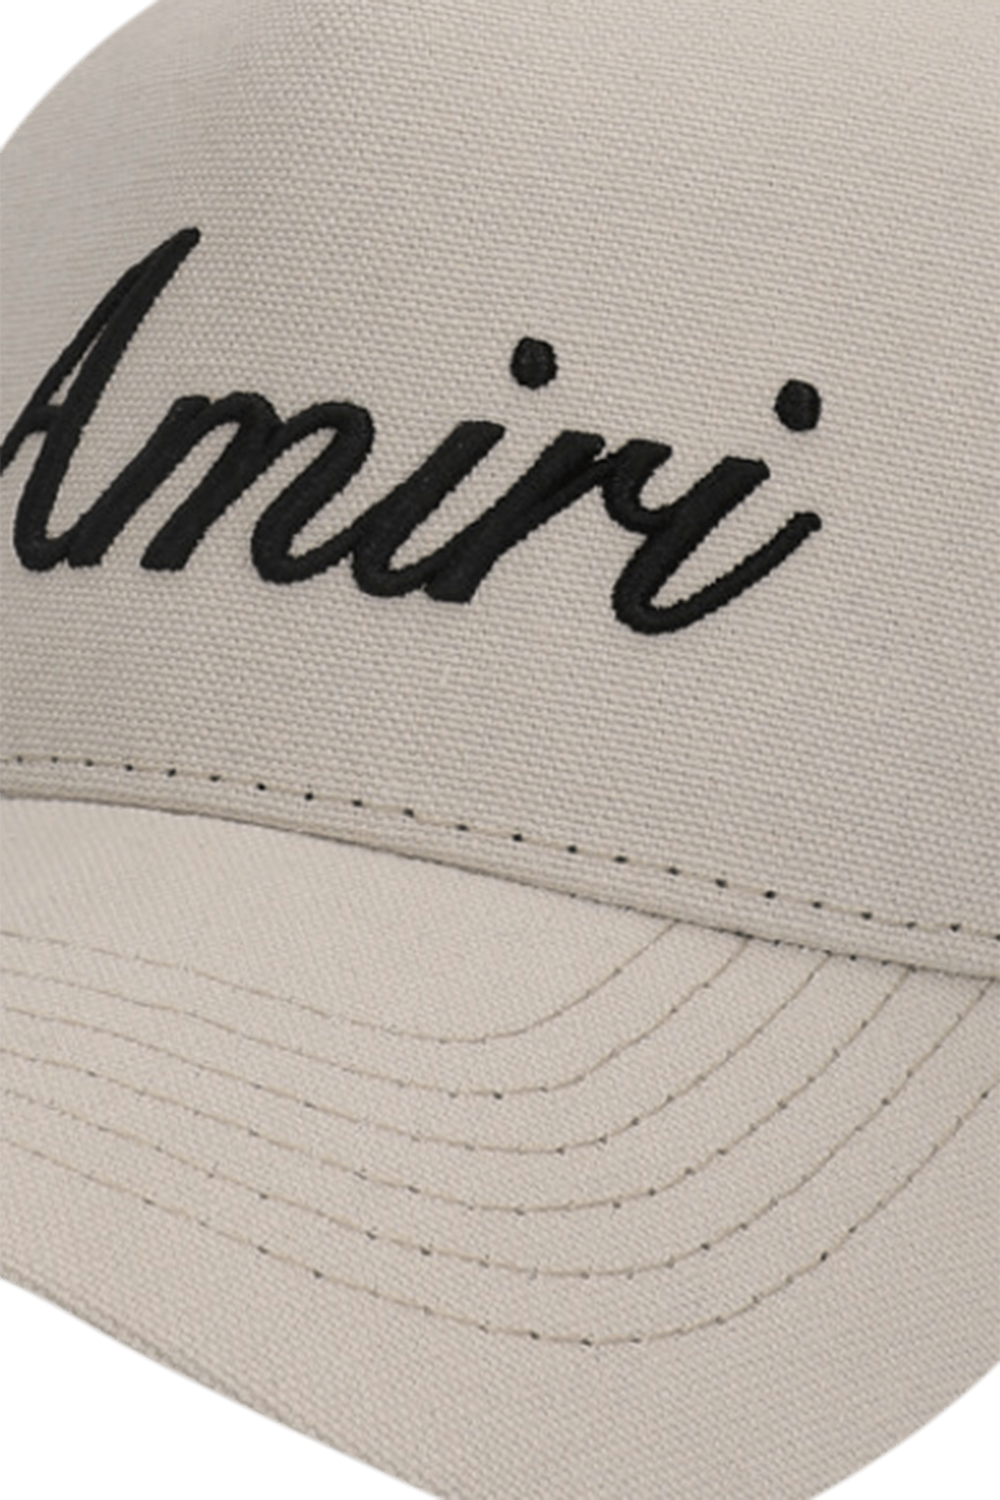 כובע מצחייה טראקר עם רקמה AMIRI